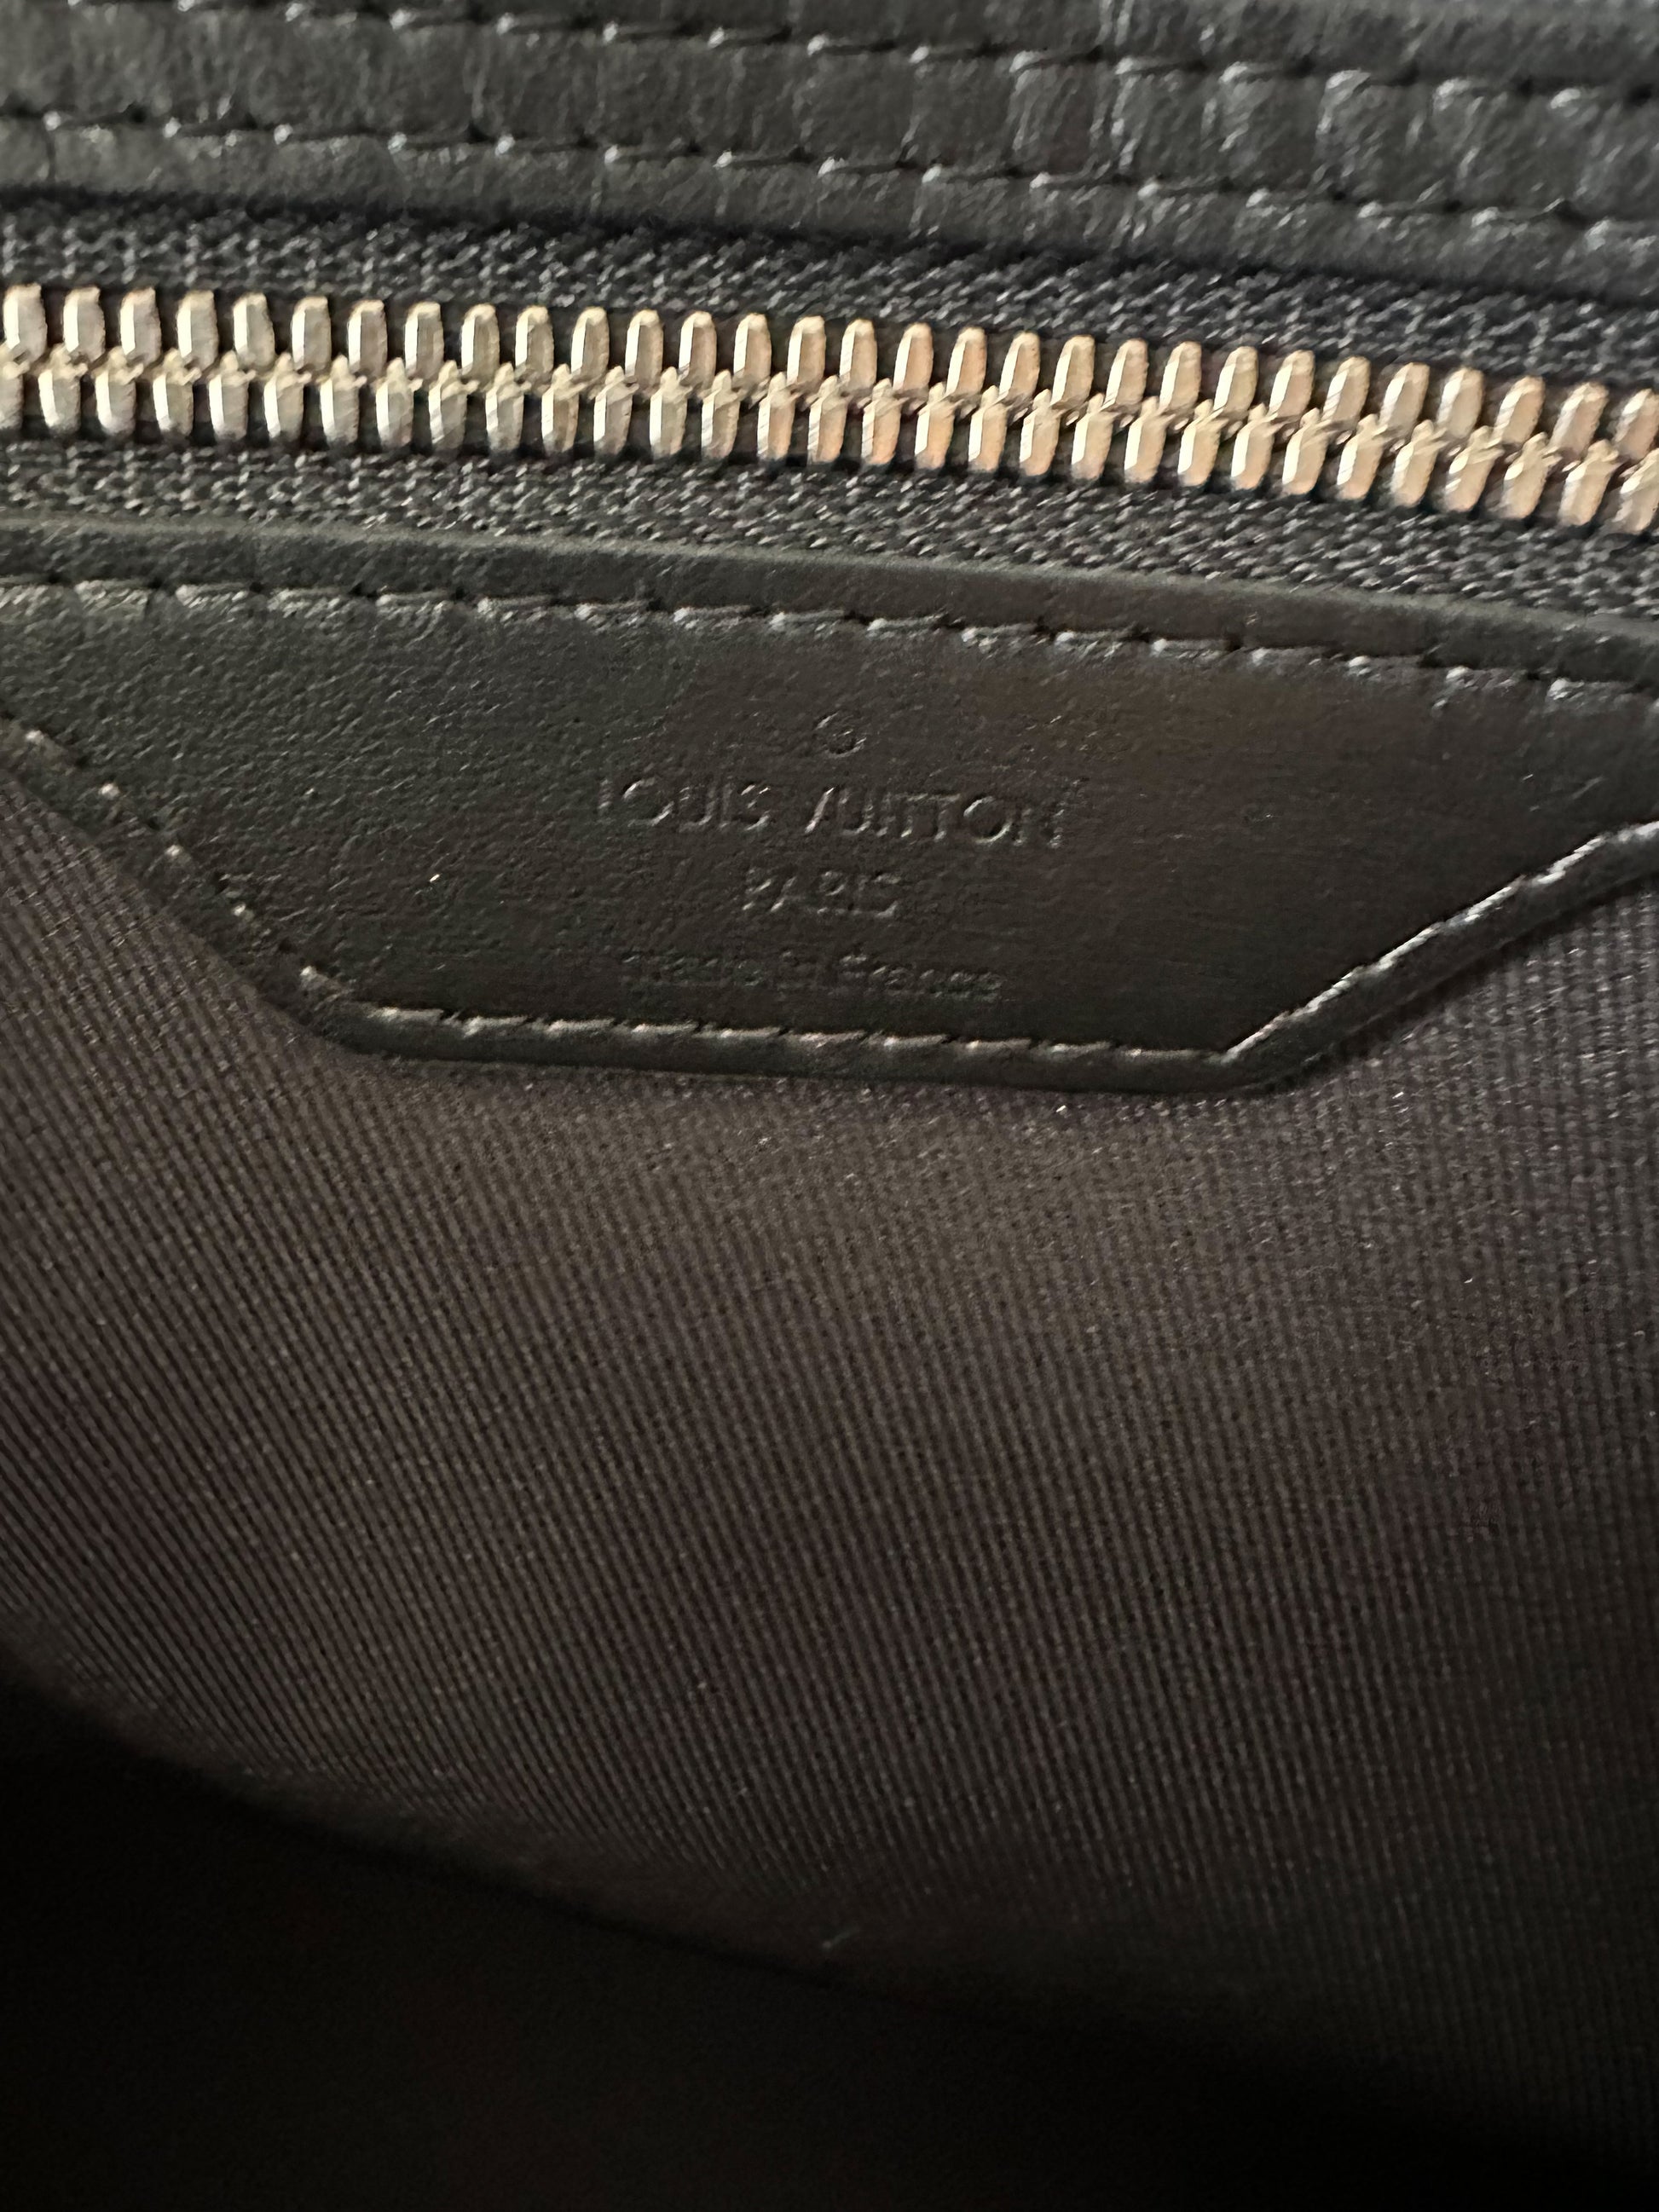 Louis Vuitton, Bags, Lv Galaxy 5 Keepall Bag